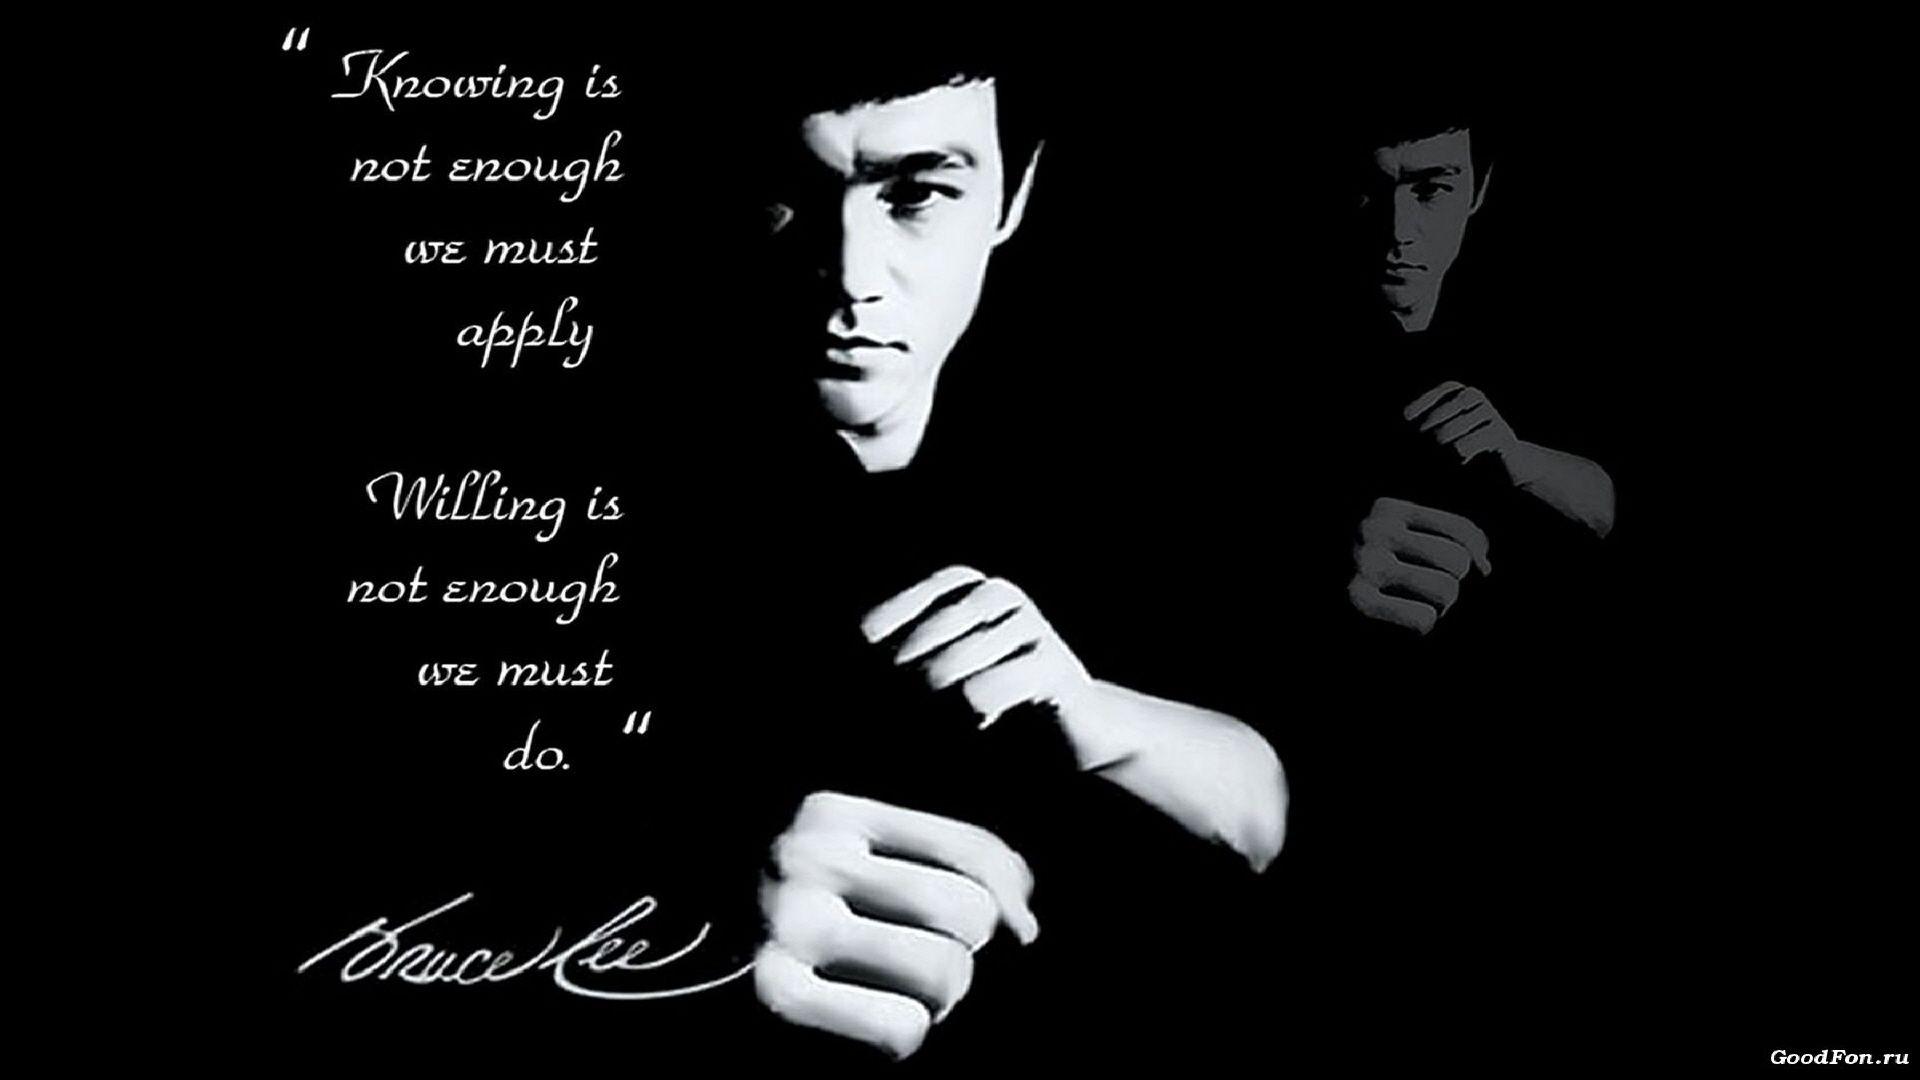 Fonds d&Bruce Lee : tous les wallpapers Bruce Lee